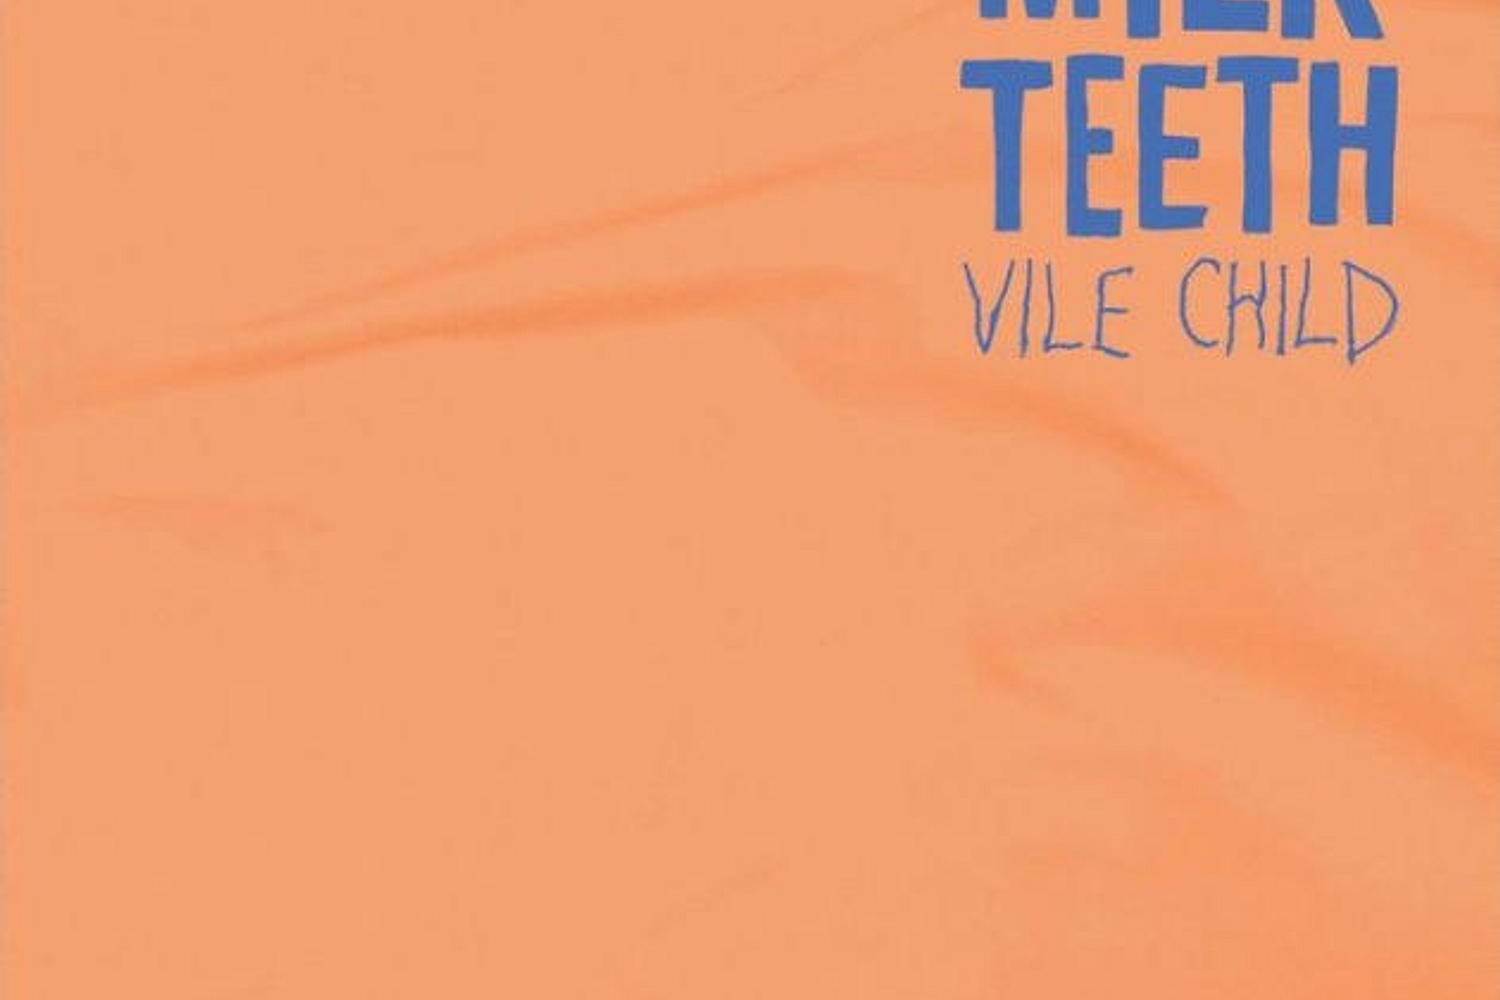 Milk Teeth - Vile Child